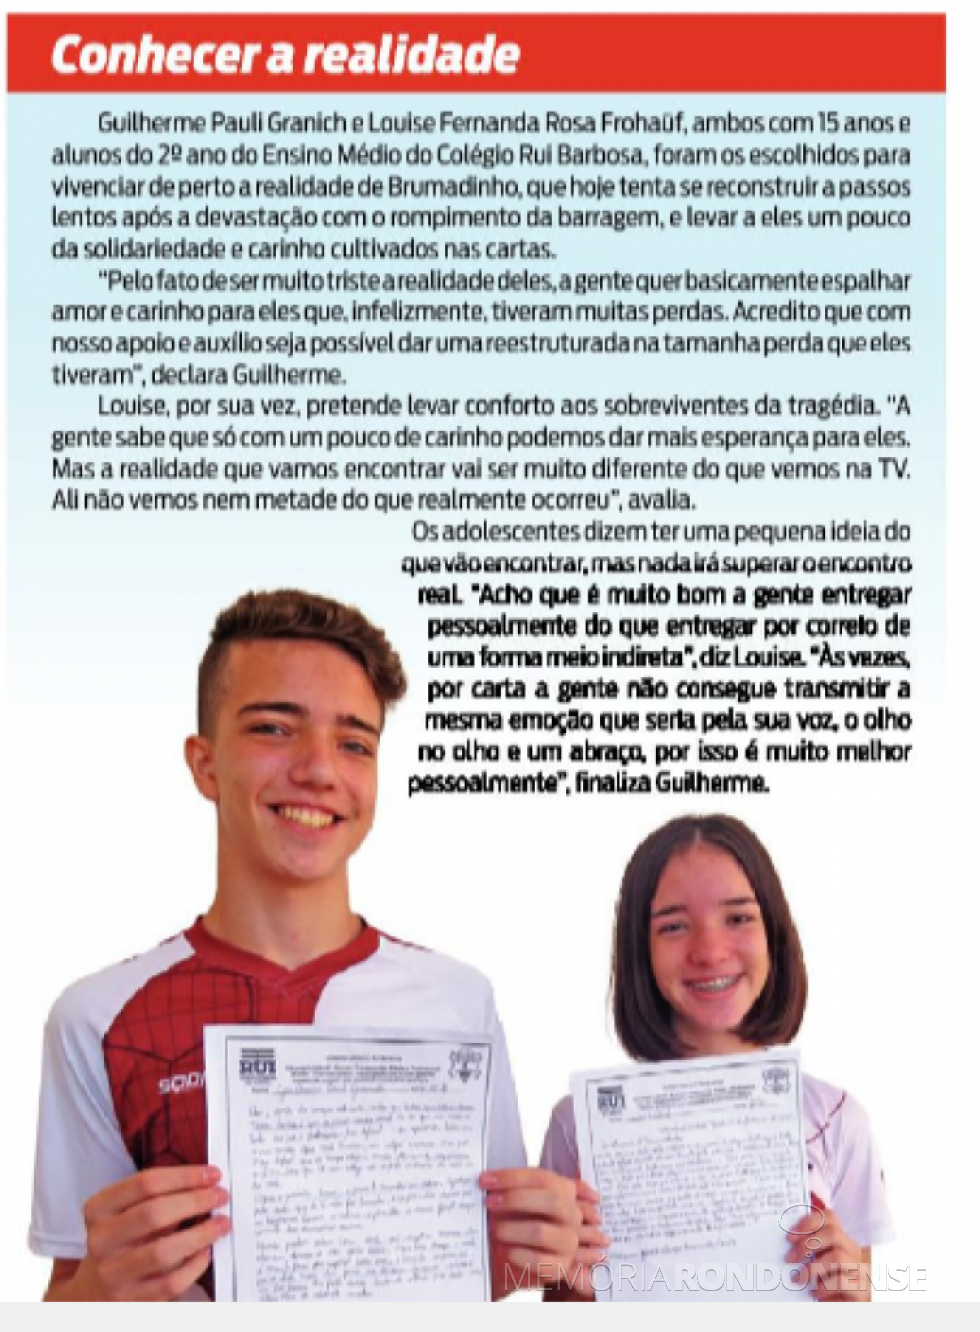 || Os alunos Guilherme Pauli Granich e Louise Fernanda Rosa Frühauj que levaram as centenas de cartas eleboradas a Minas Gerais.
Imagem: Acervo O Presente - FOTO 6 - 